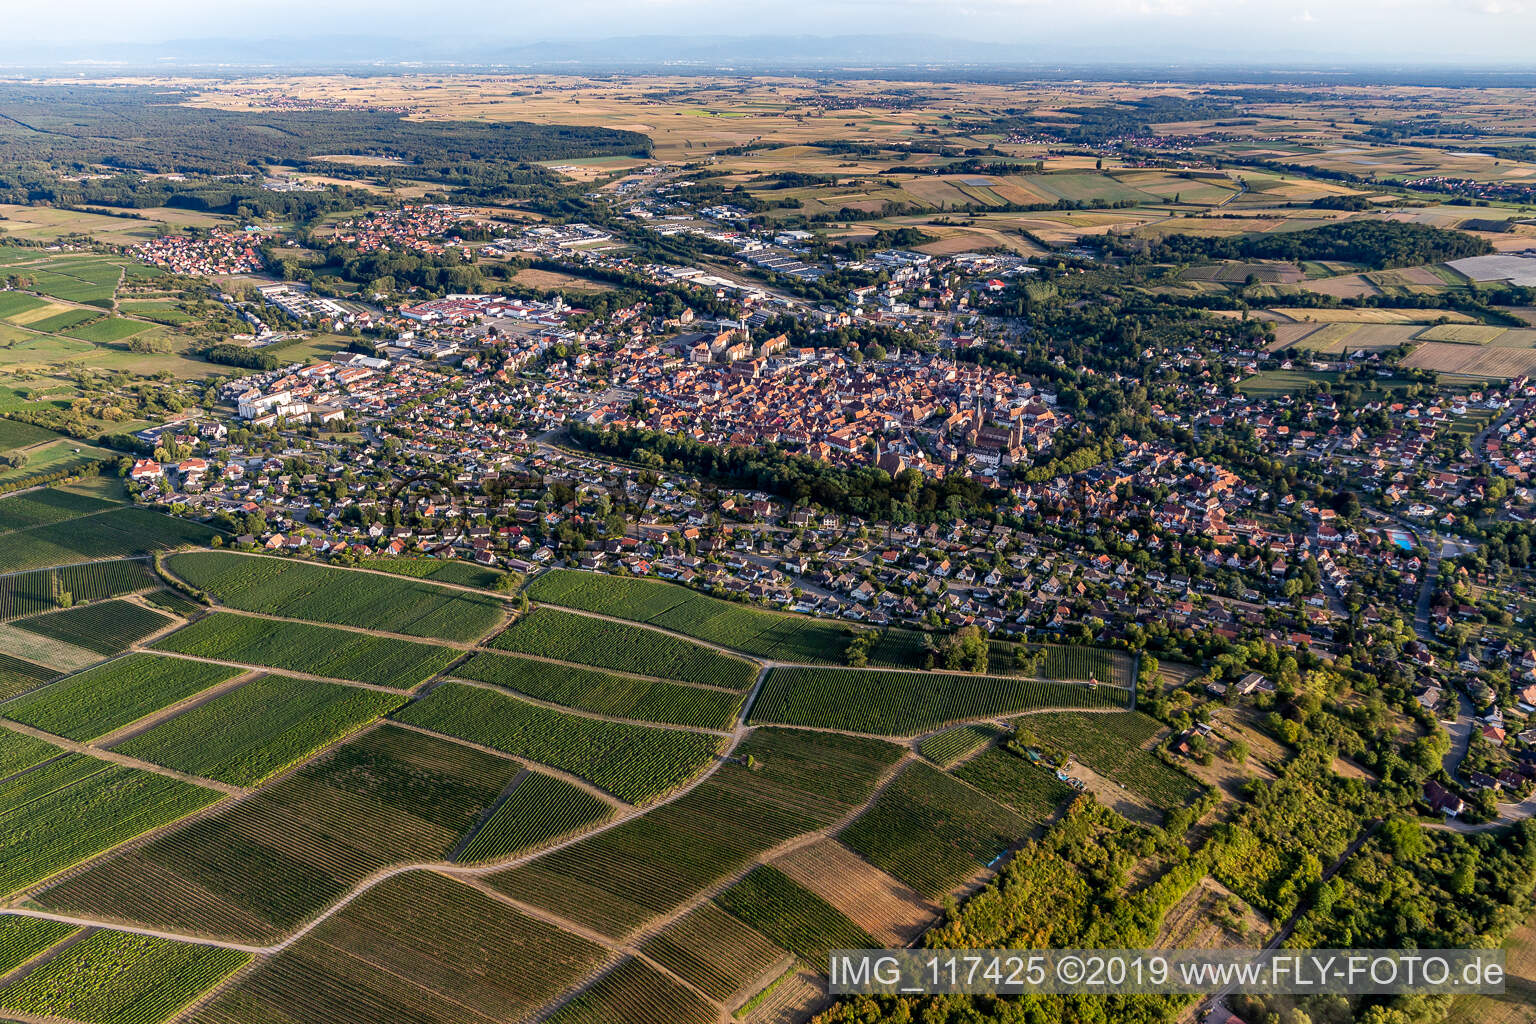 Wissembourg im Bundesland Bas-Rhin, Frankreich von oben gesehen